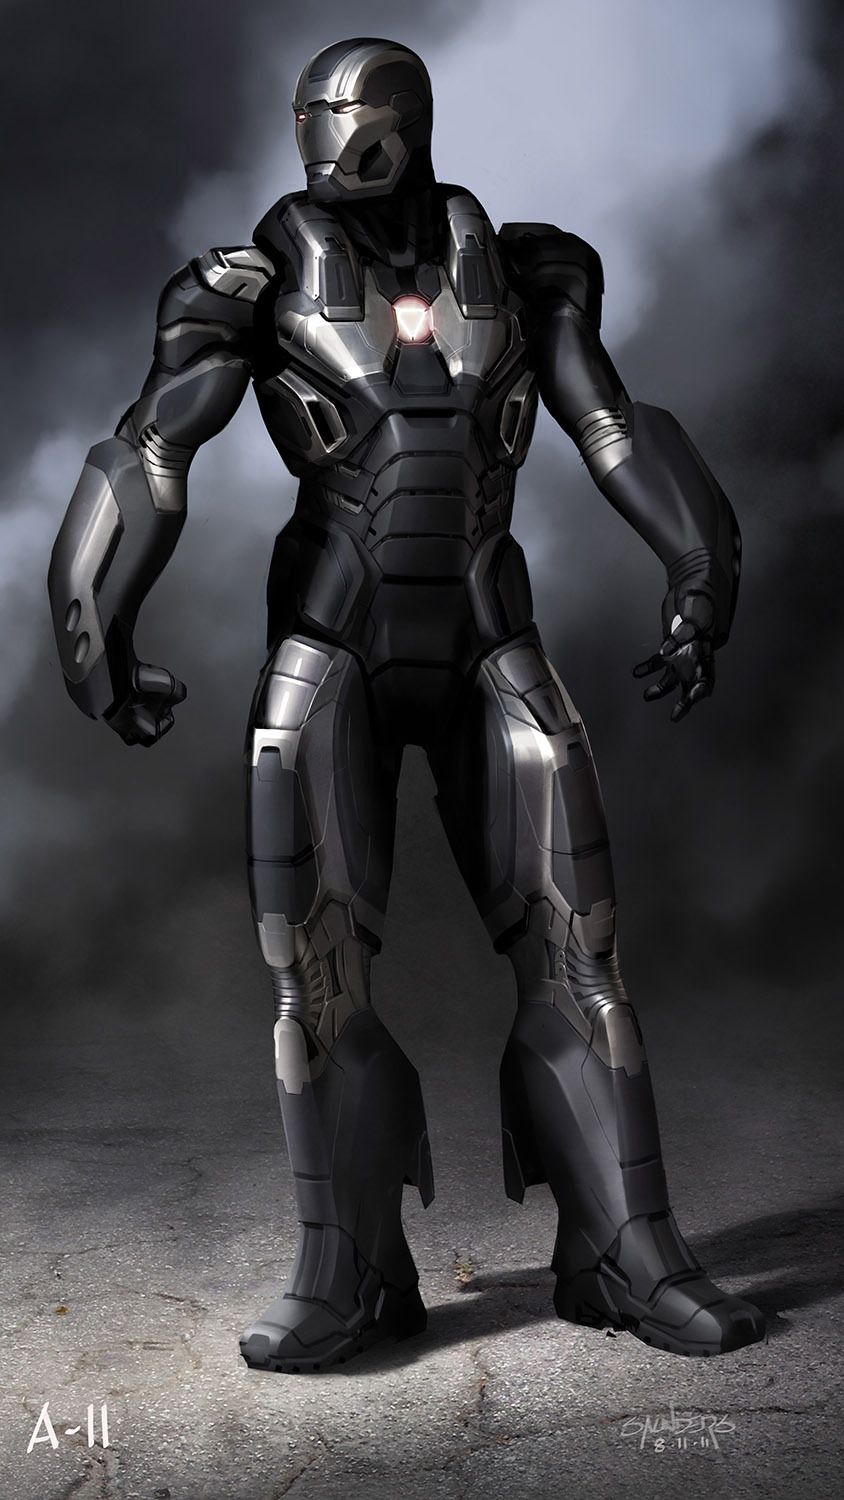 IRON MAN 3: Alternate War Machine & Mark 42 Designs